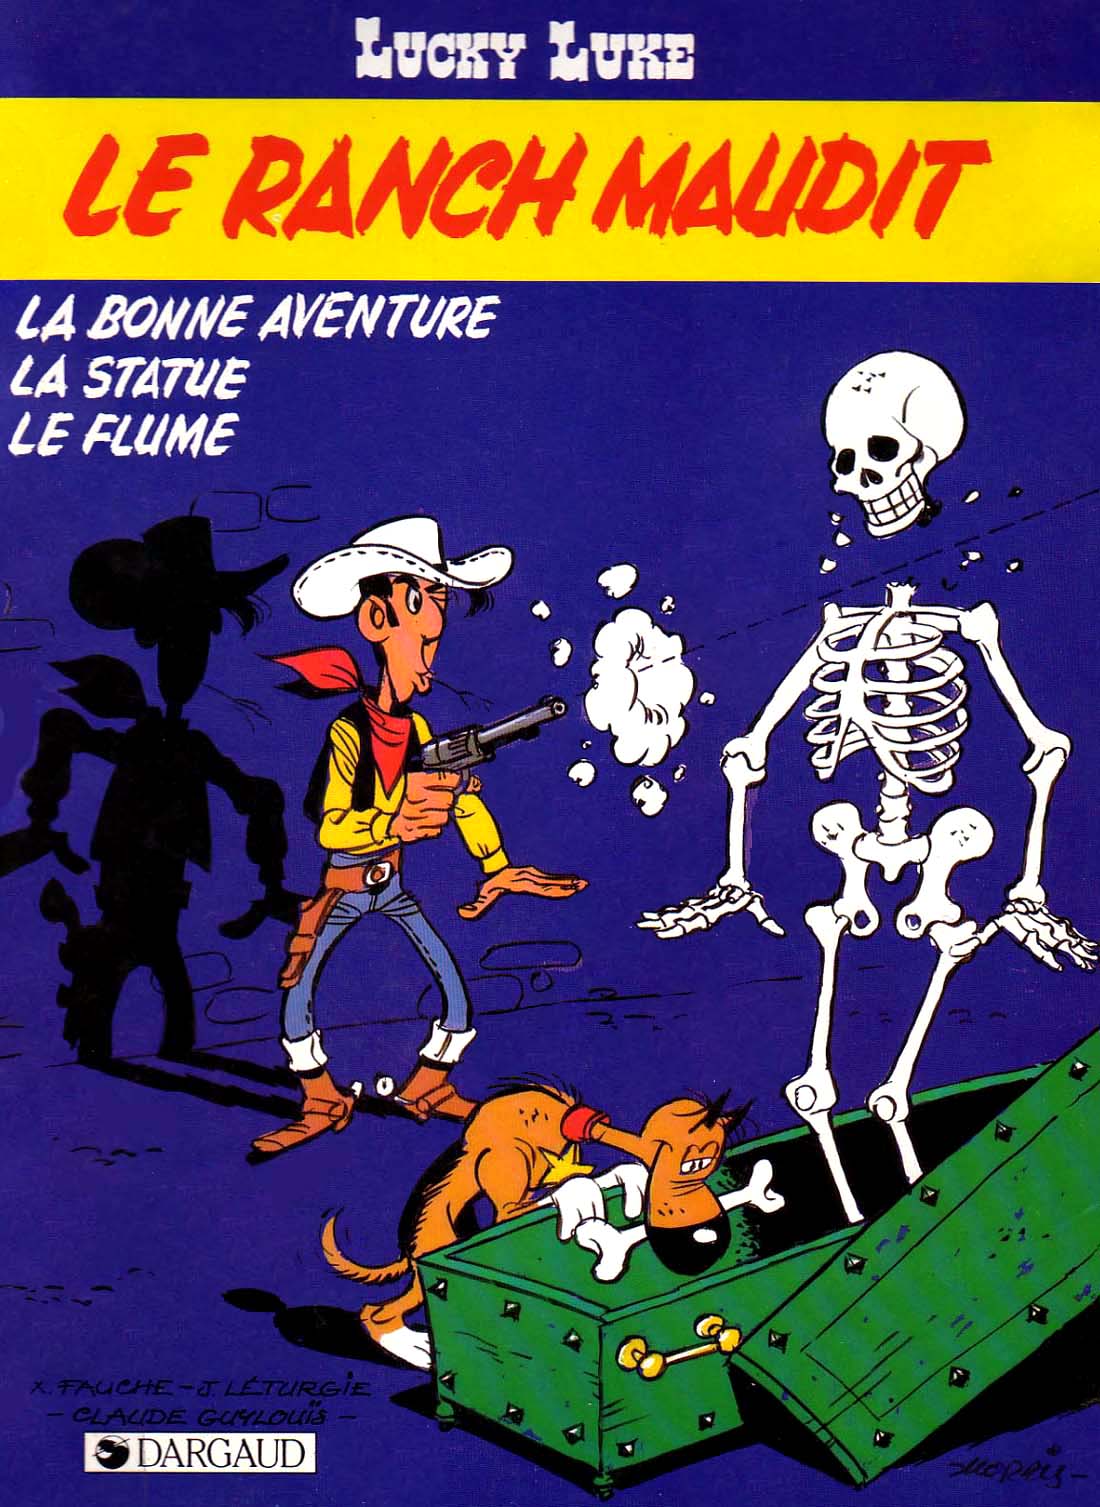 Avec "Le Ranch maudit" (1986), Lucky Luke a depuis 3 ans abandonné définitivement sa cigarette... et arrêter de jouer avec la Mort !